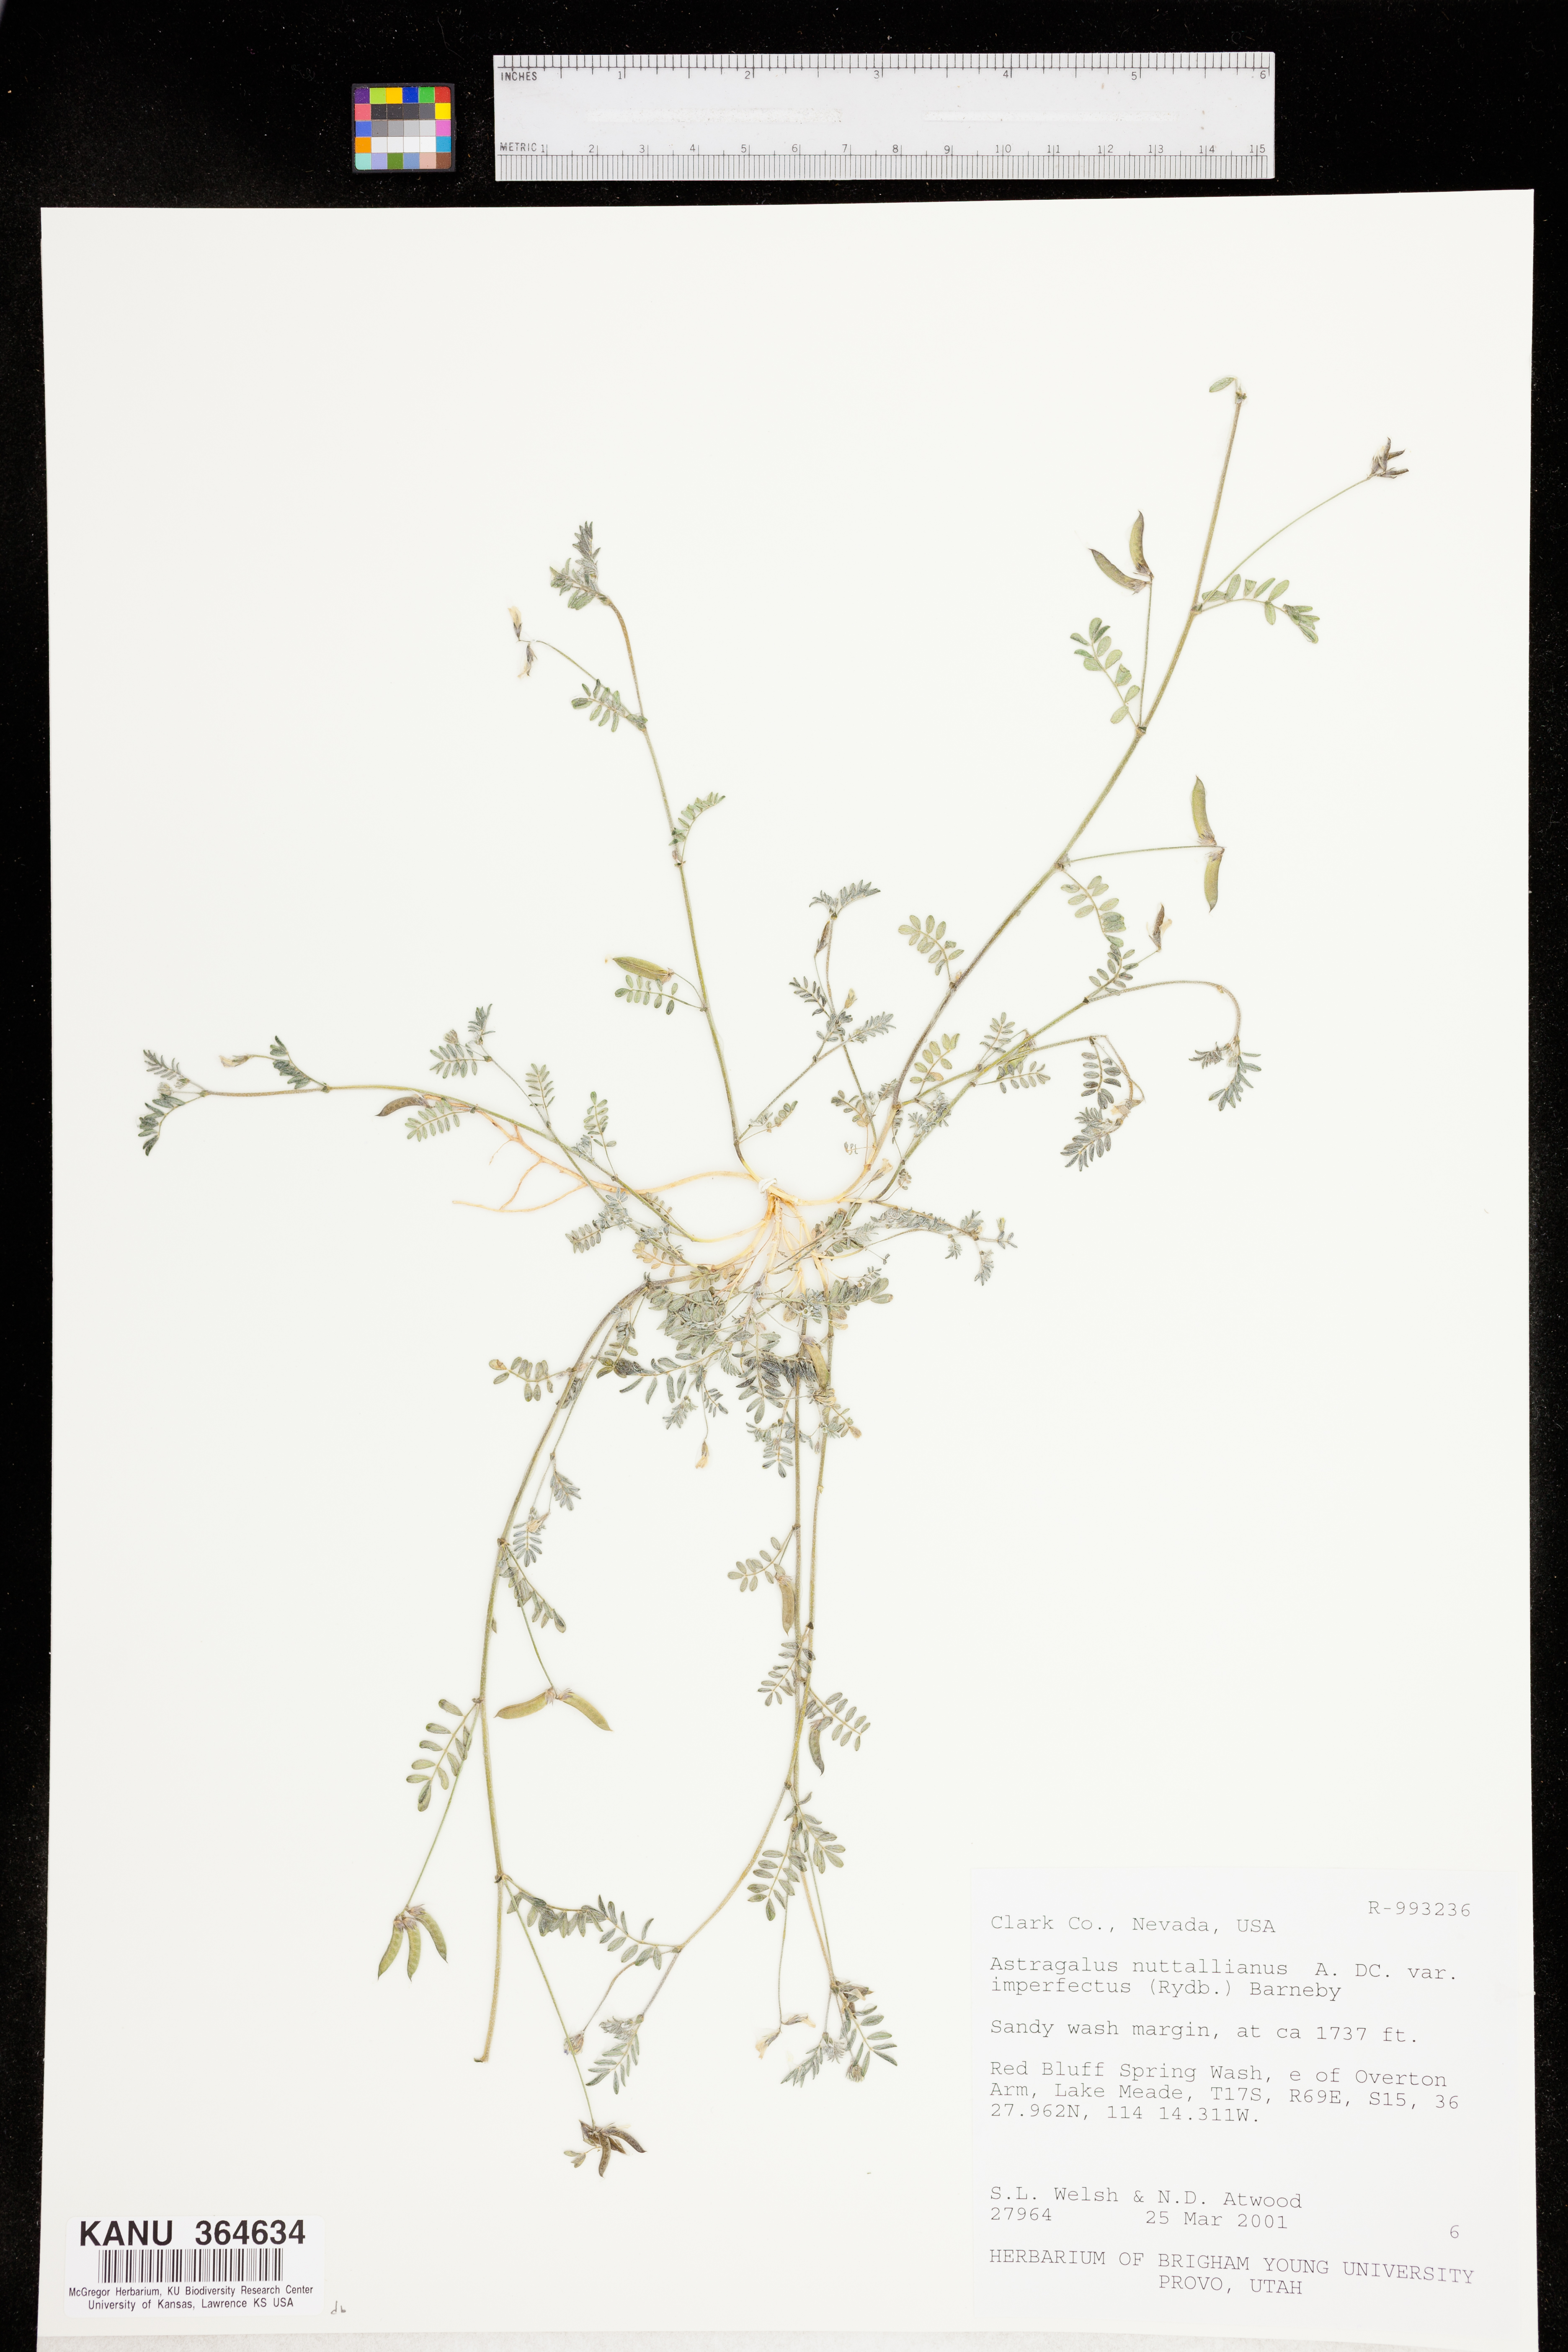 Astragalus nuttallianus var. imperfectus image